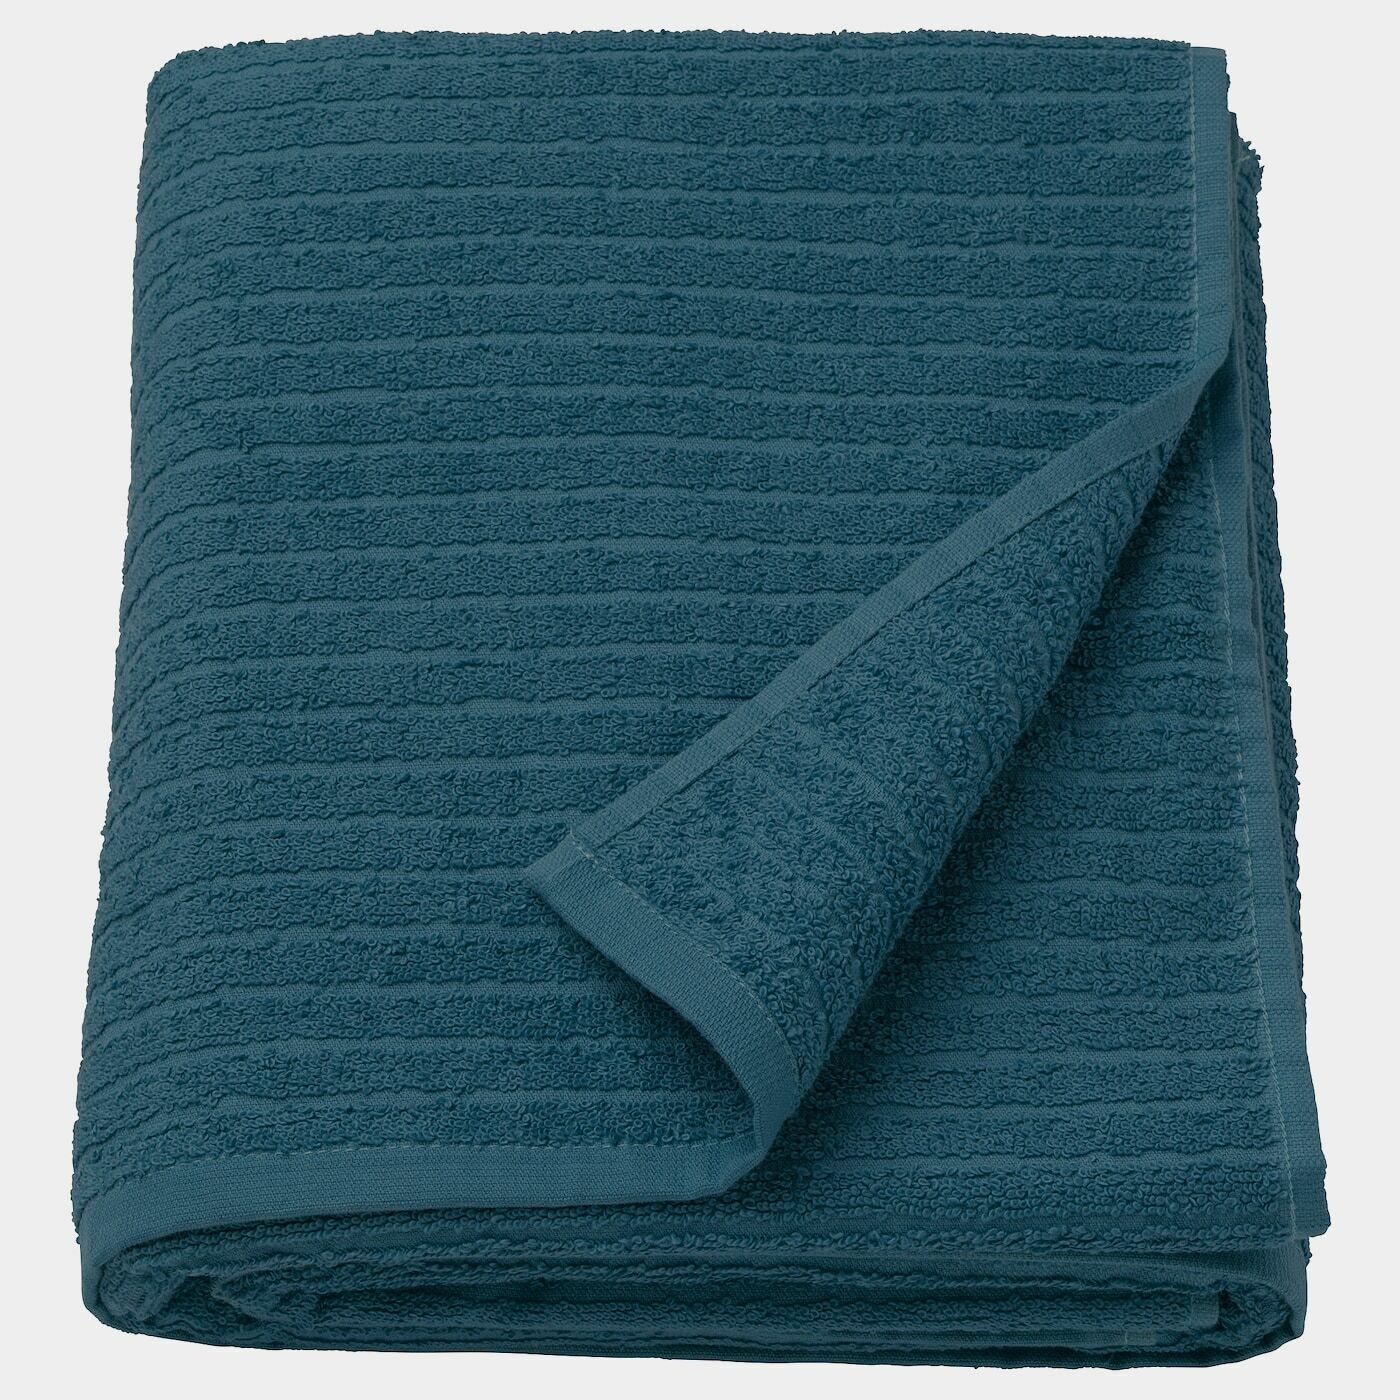 VÅGSJÖN Badelaken  - Handtücher - Textilien Ideen für dein Zuhause von Home Trends. Textilien Trends von Social Media Influencer für dein Skandi Zuhause.